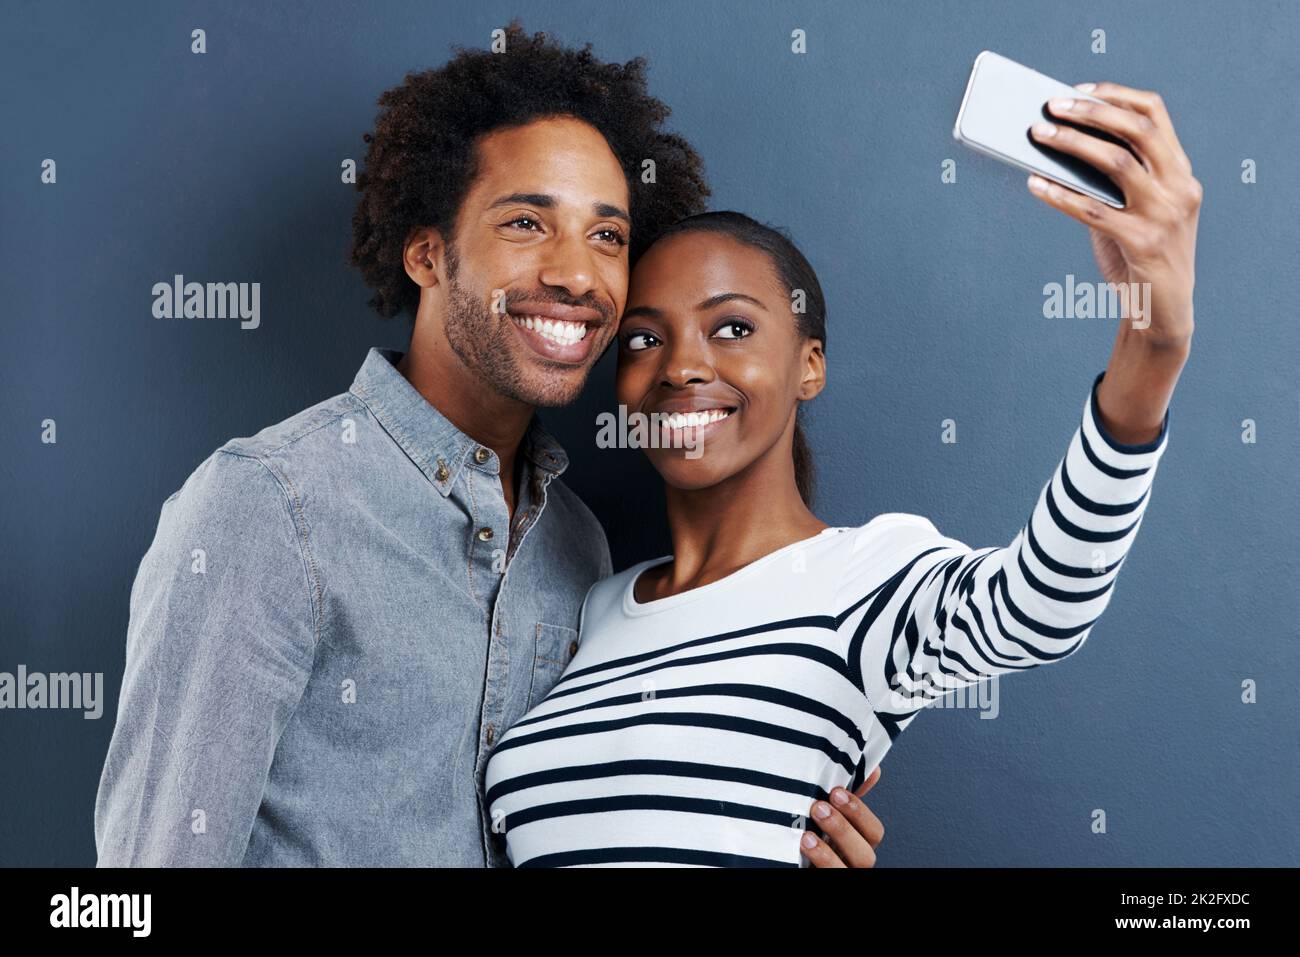 Nouvelle photo de profil. Photo d'un jeune couple heureux prenant une photo d'eux-mêmes avec un téléphone portable sur fond gris. Banque D'Images